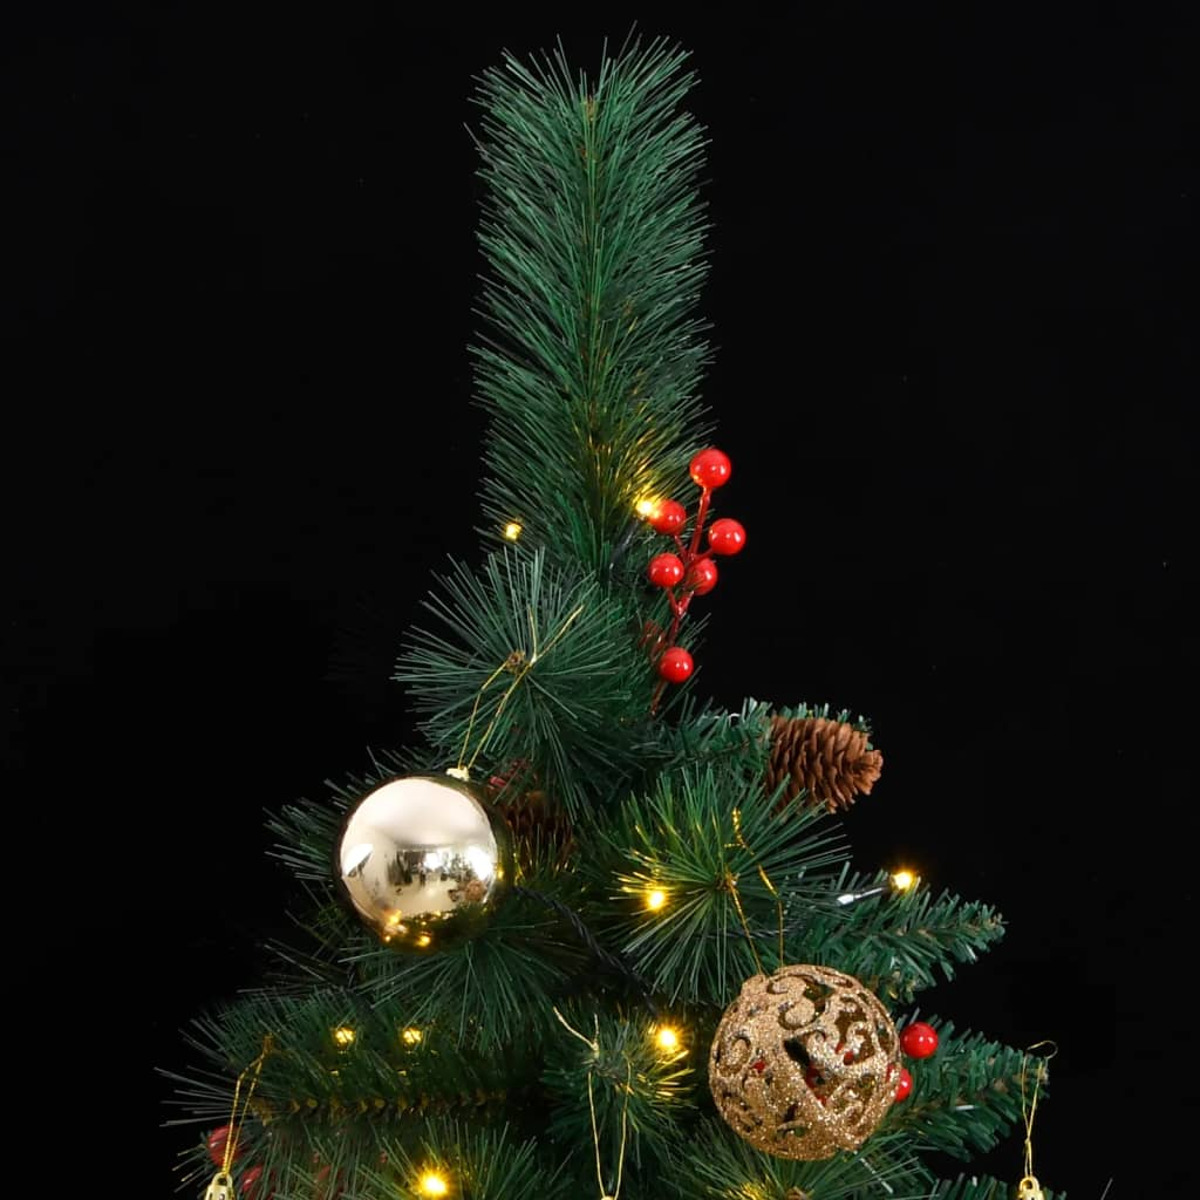 VIDAXL 3210236 Weihnachtsbaum